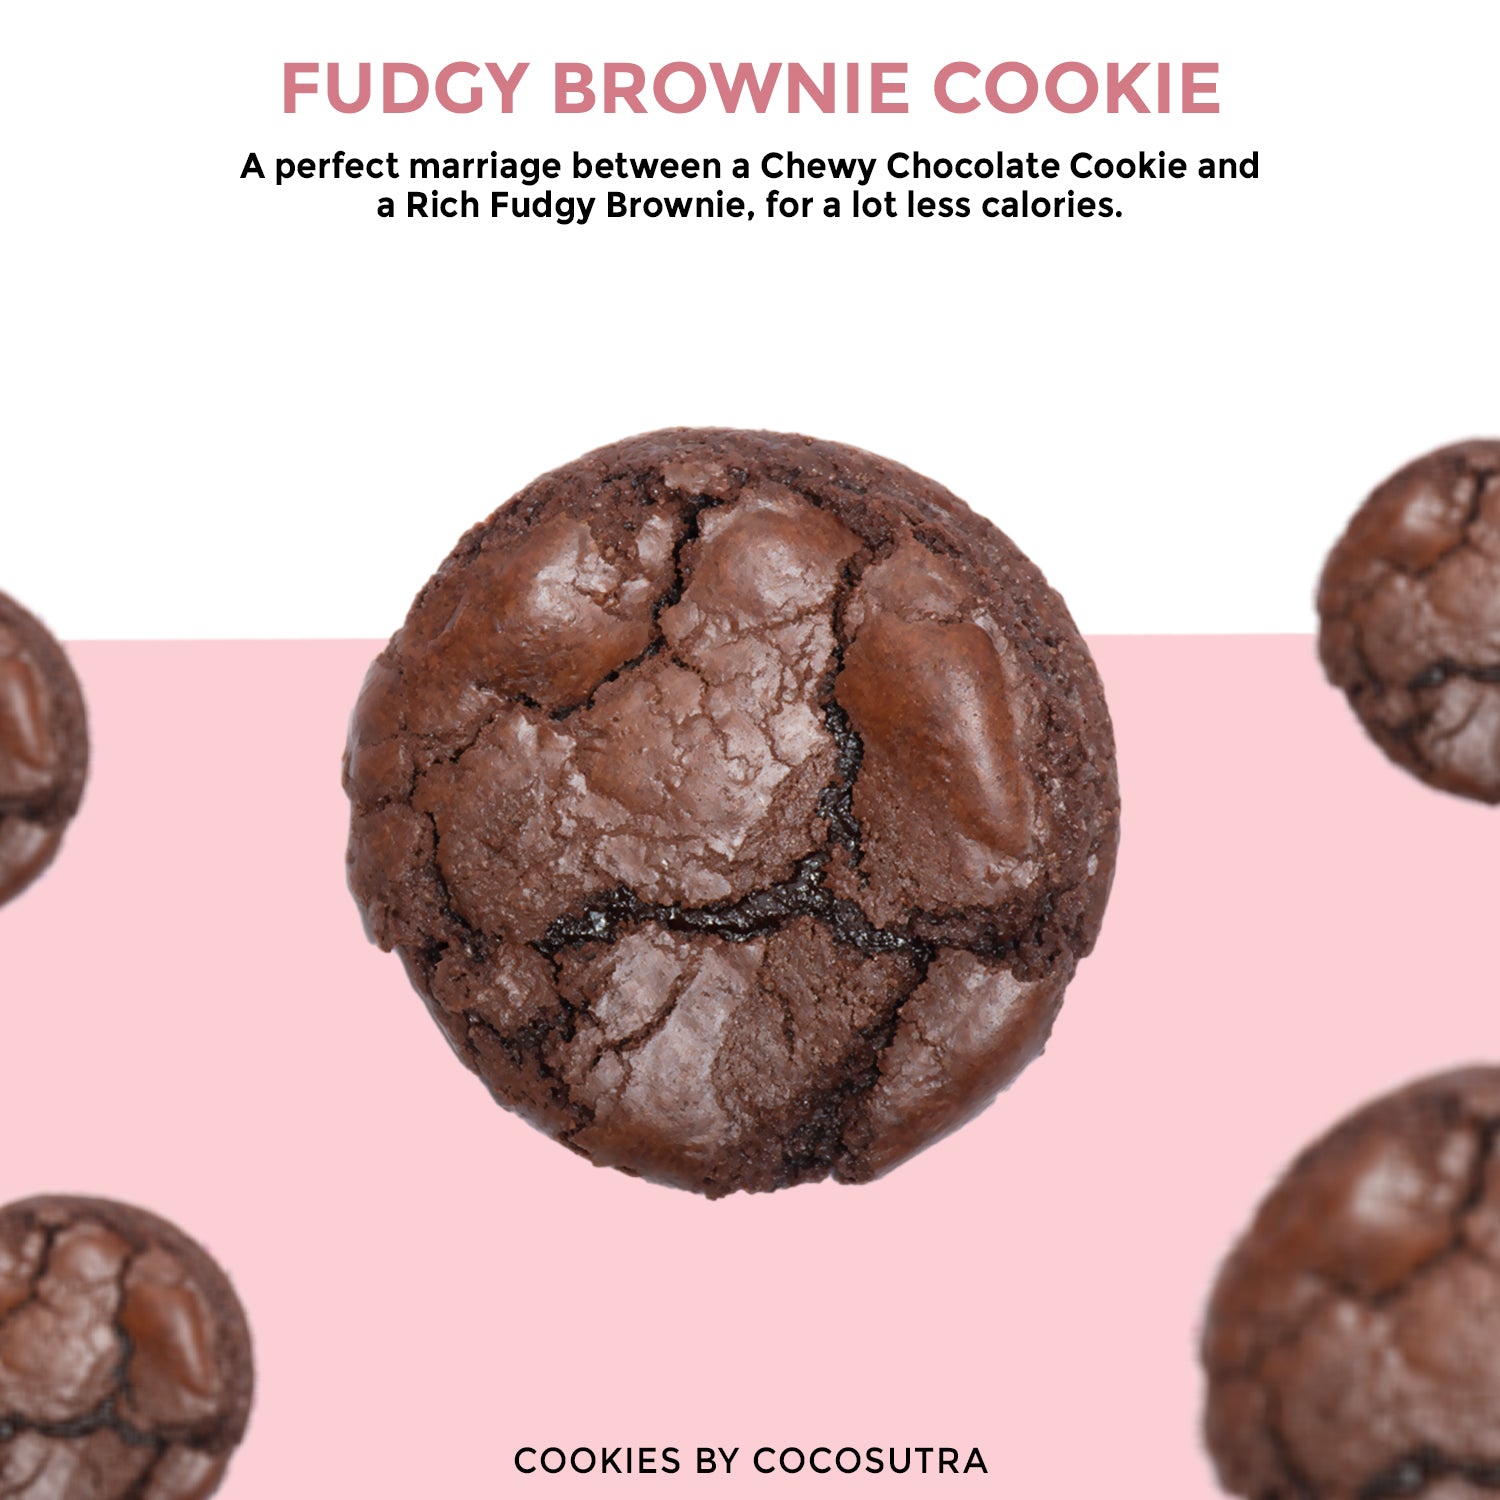 Cocosutra Assorted Goumet Cookies - Fudgy Brownie